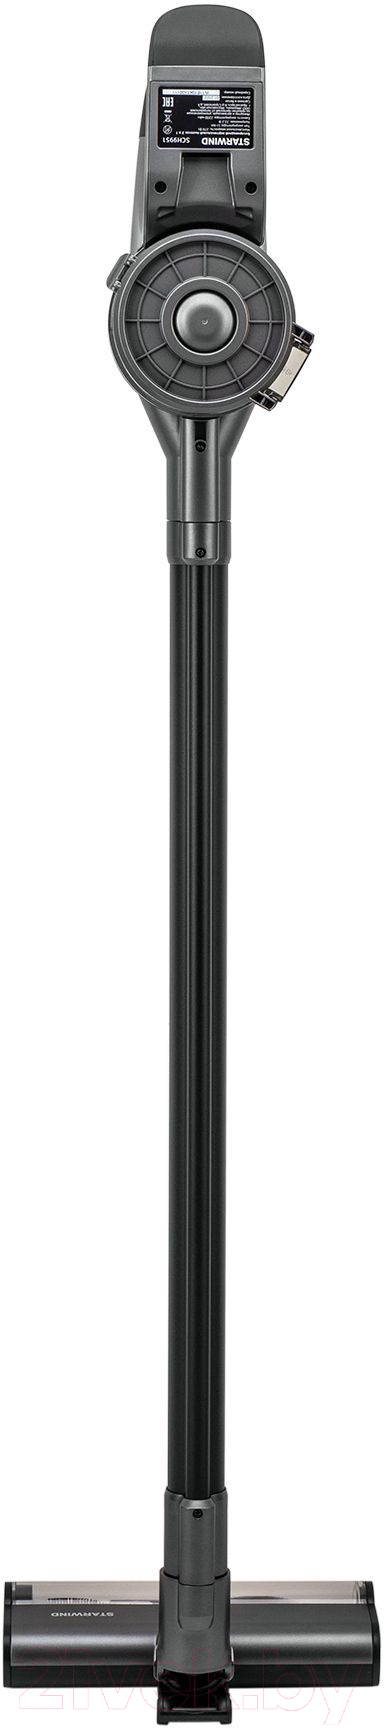 Вертикальный пылесос StarWind SCH9951